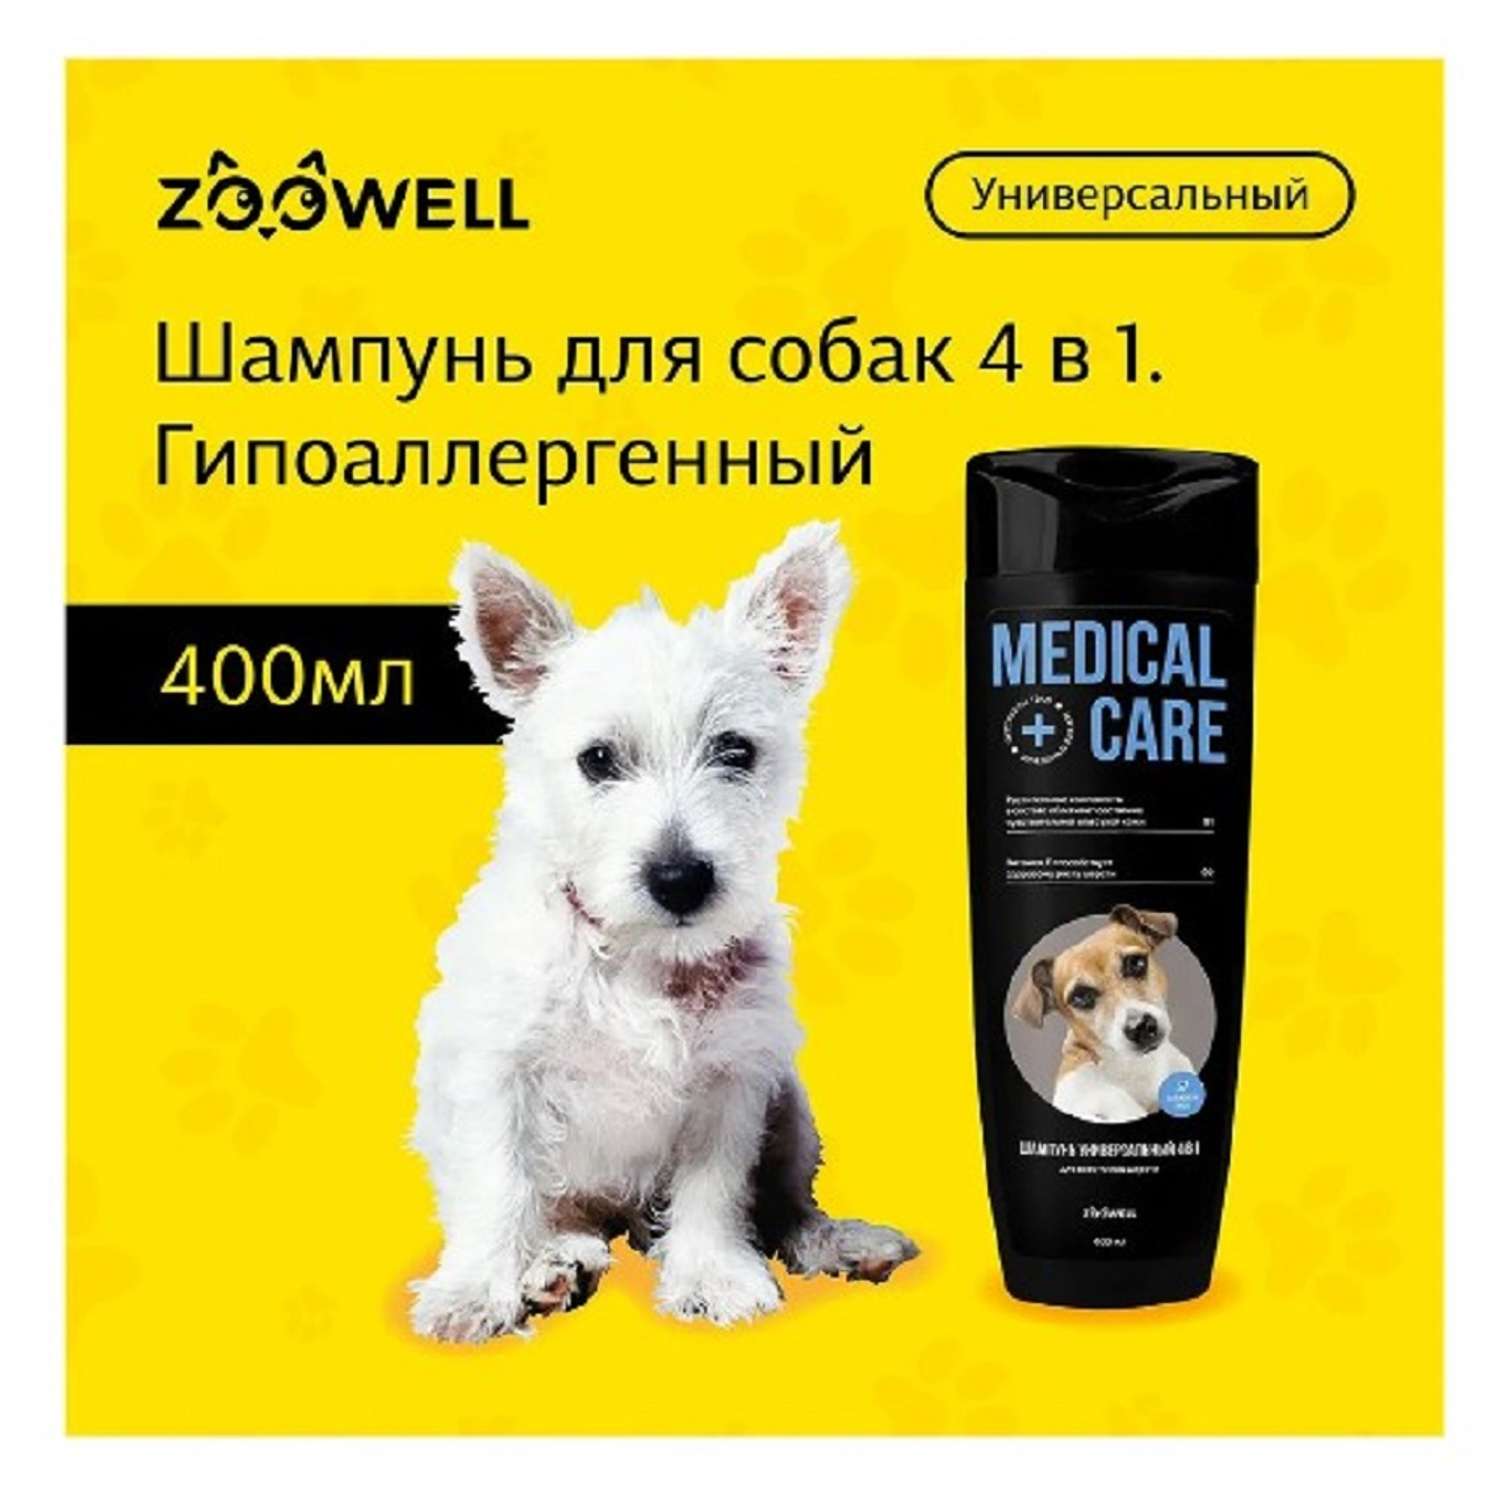 Шампунь для собак ZDK ZOOWELL Medical Care 4 в 1 гипоаллергенный универсальный для мелких и крупных пород 400 мл - фото 2